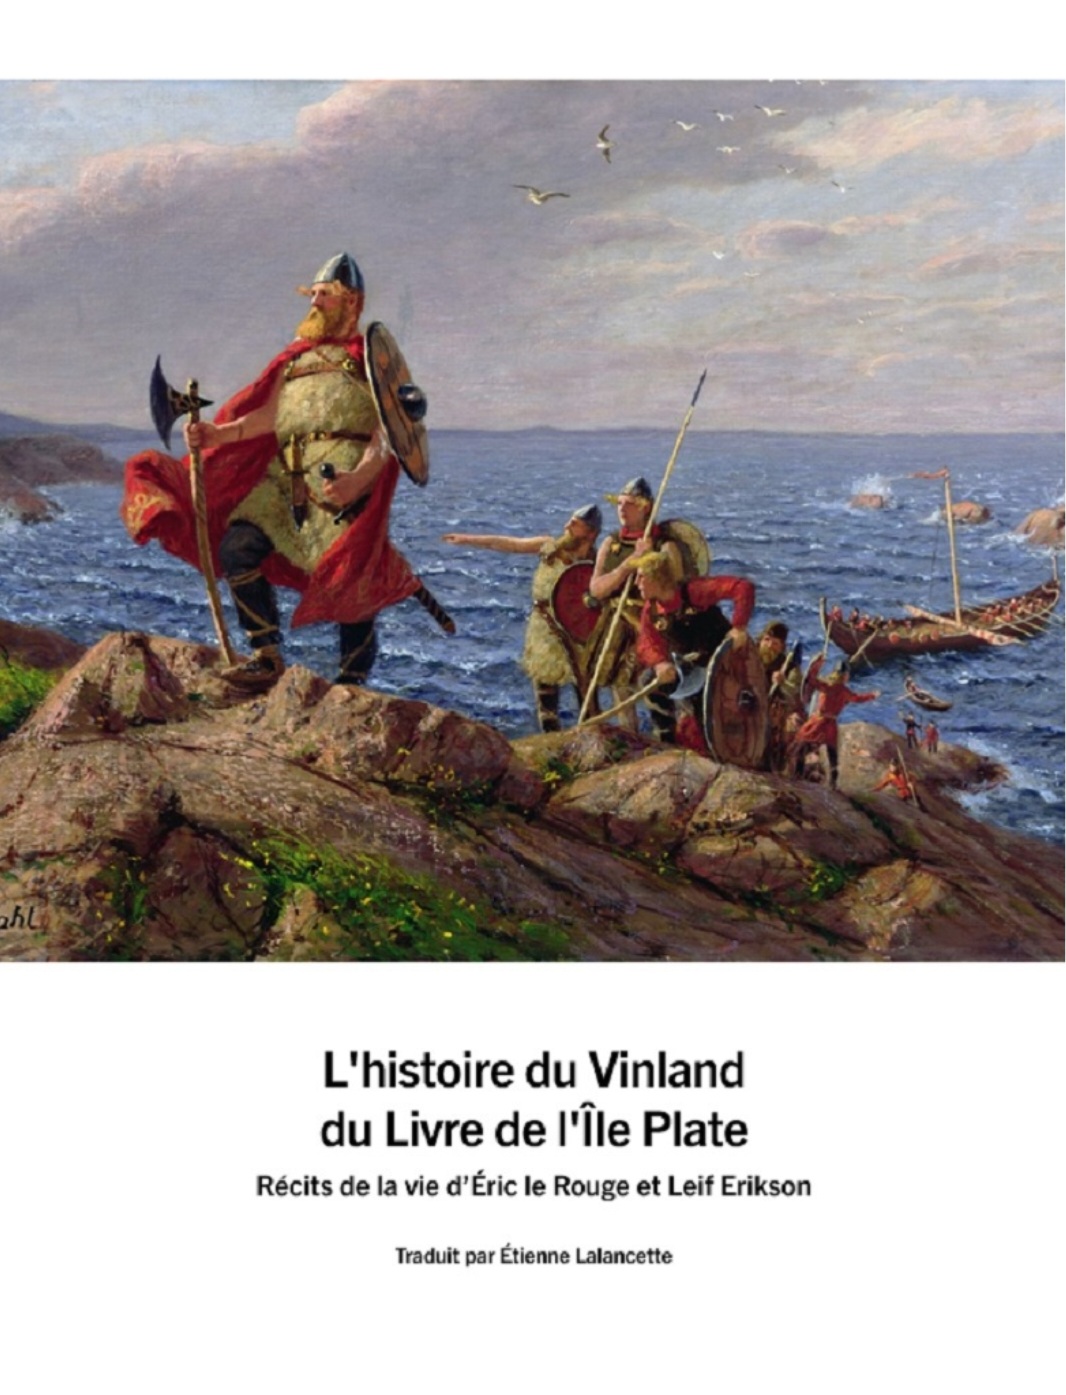 L’histoire du Vinland – Série des textes anciens – Éditions LWM